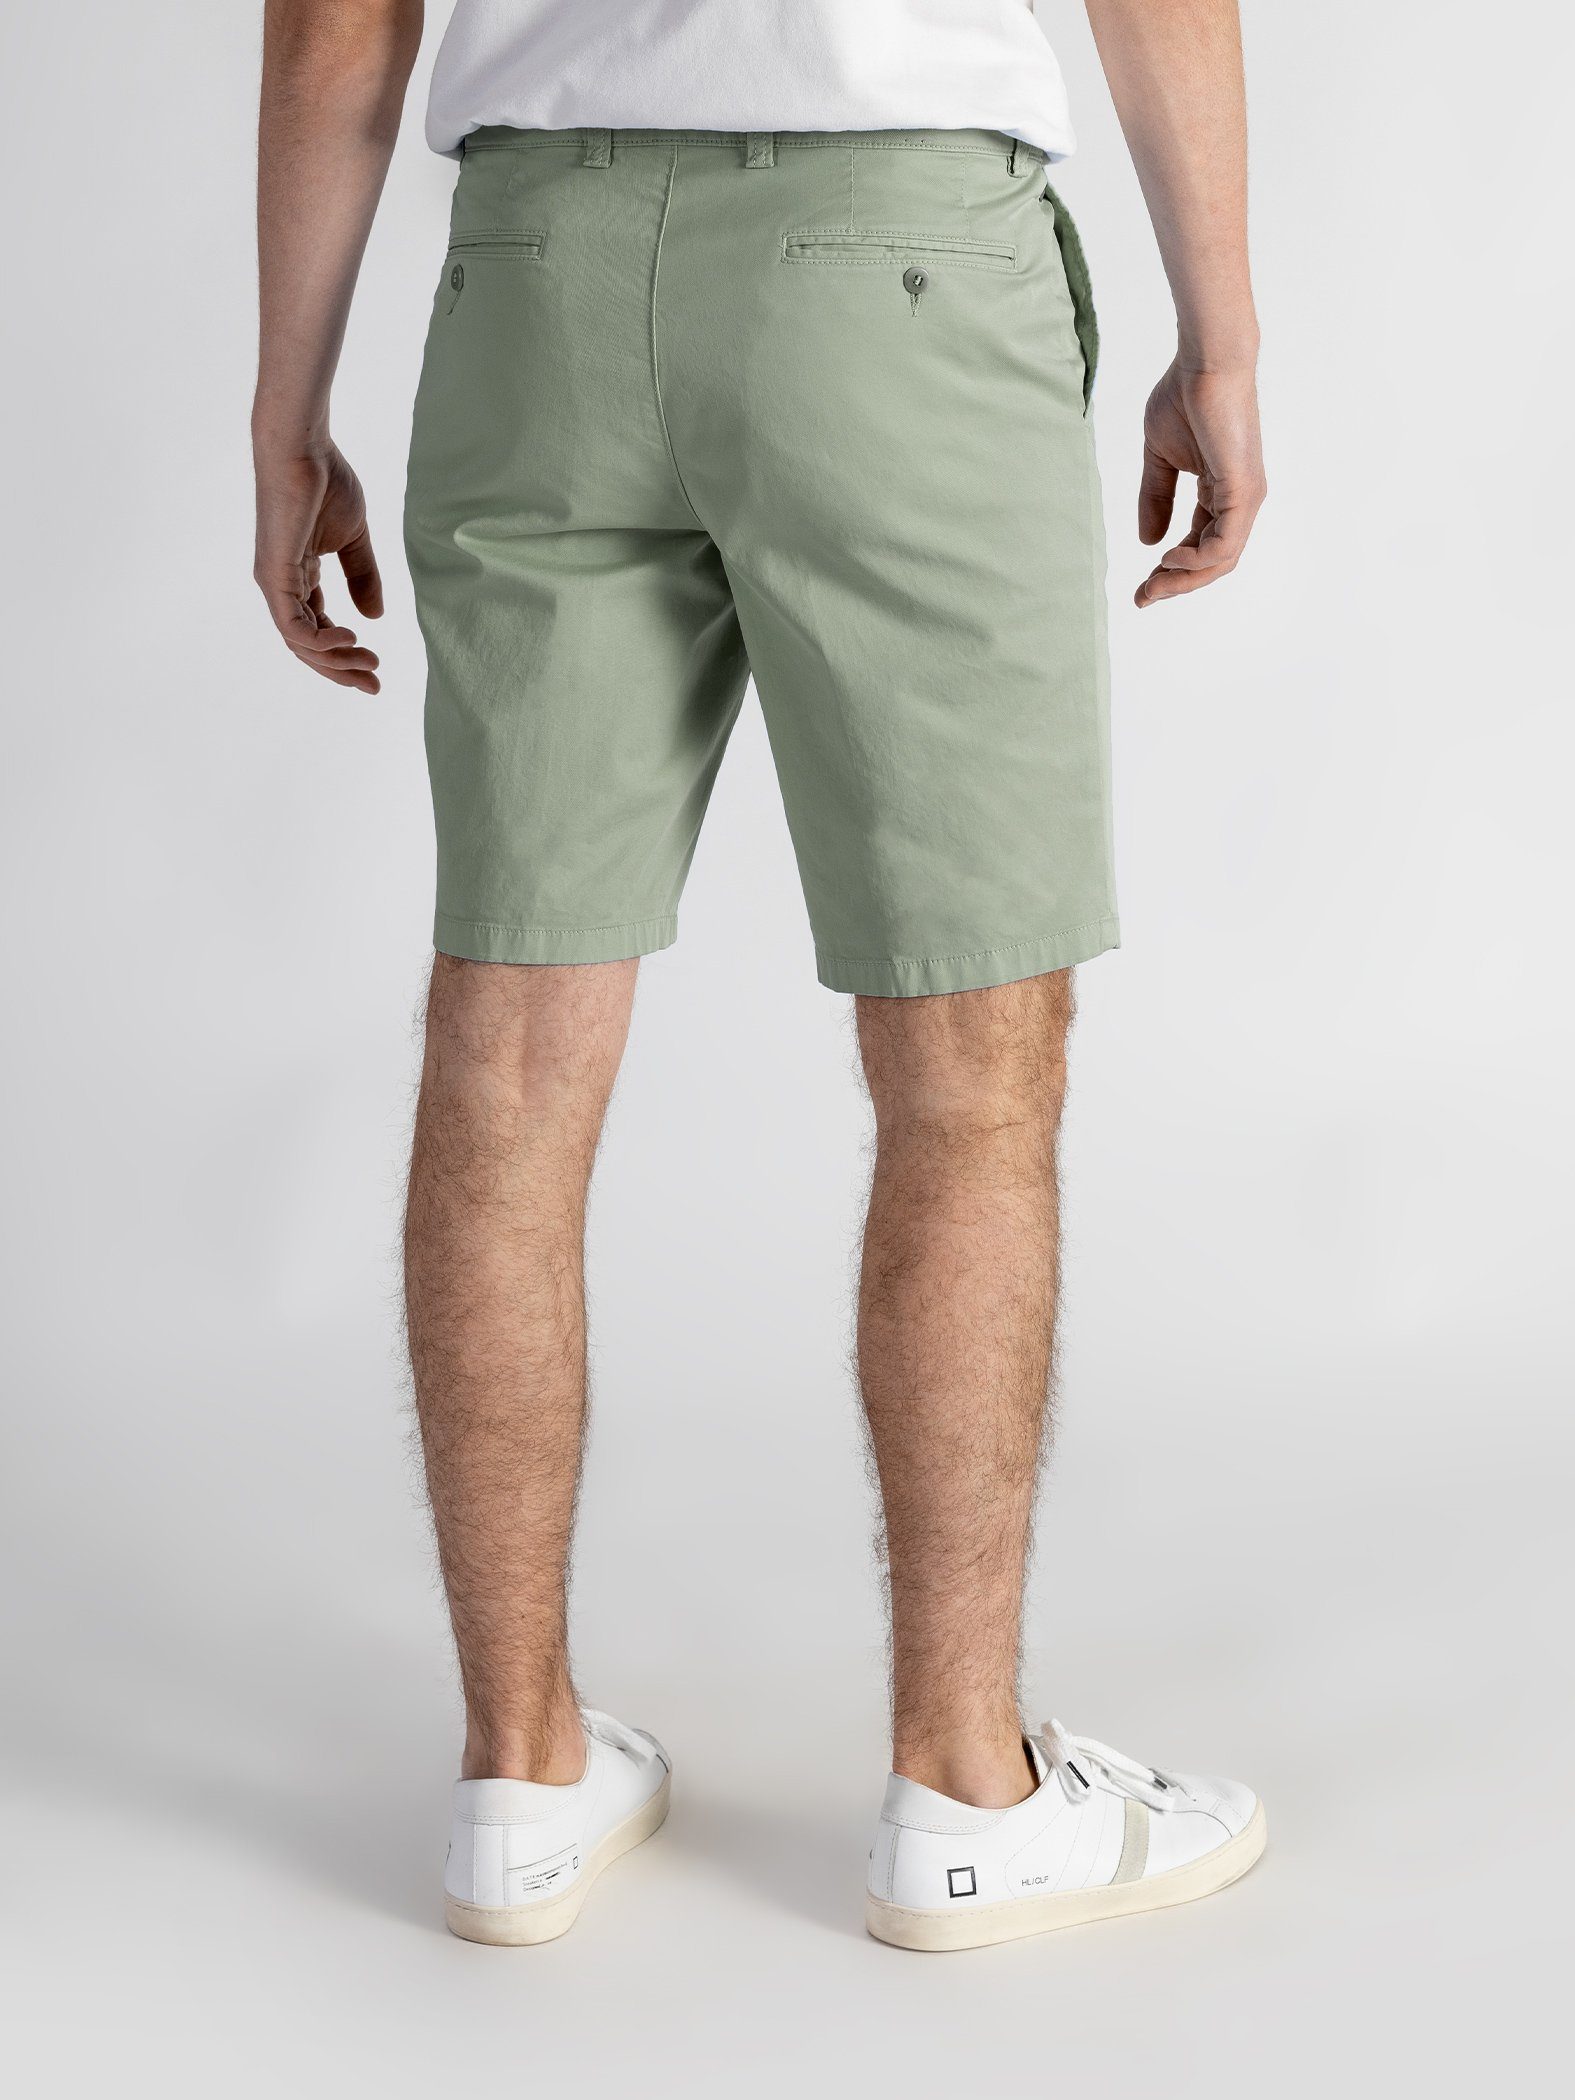 Shorts Bund, TwoMates Shorts hellgrün Farbauswahl, mit elastischem GOTS-zertifiziert